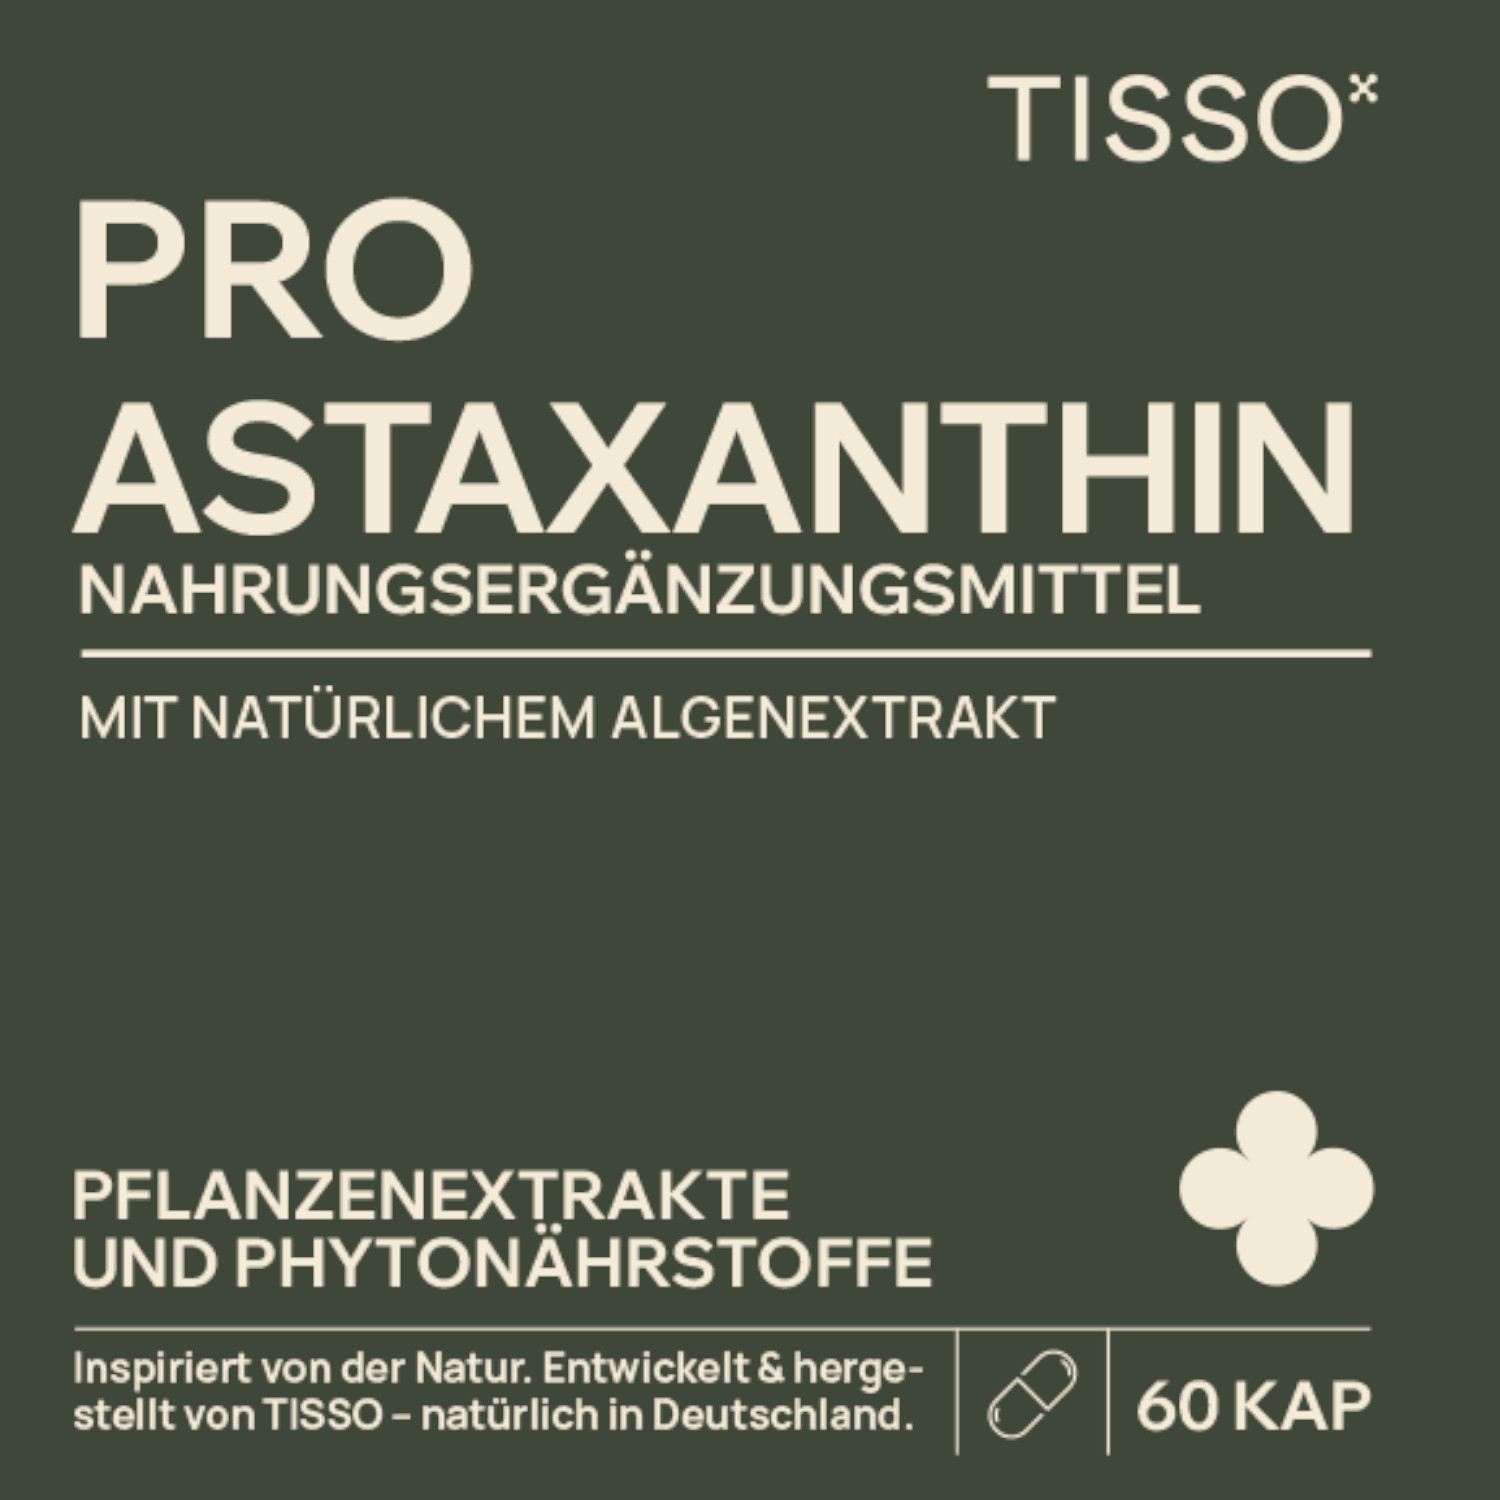 Pro Astaxanthin von TISSO - Label